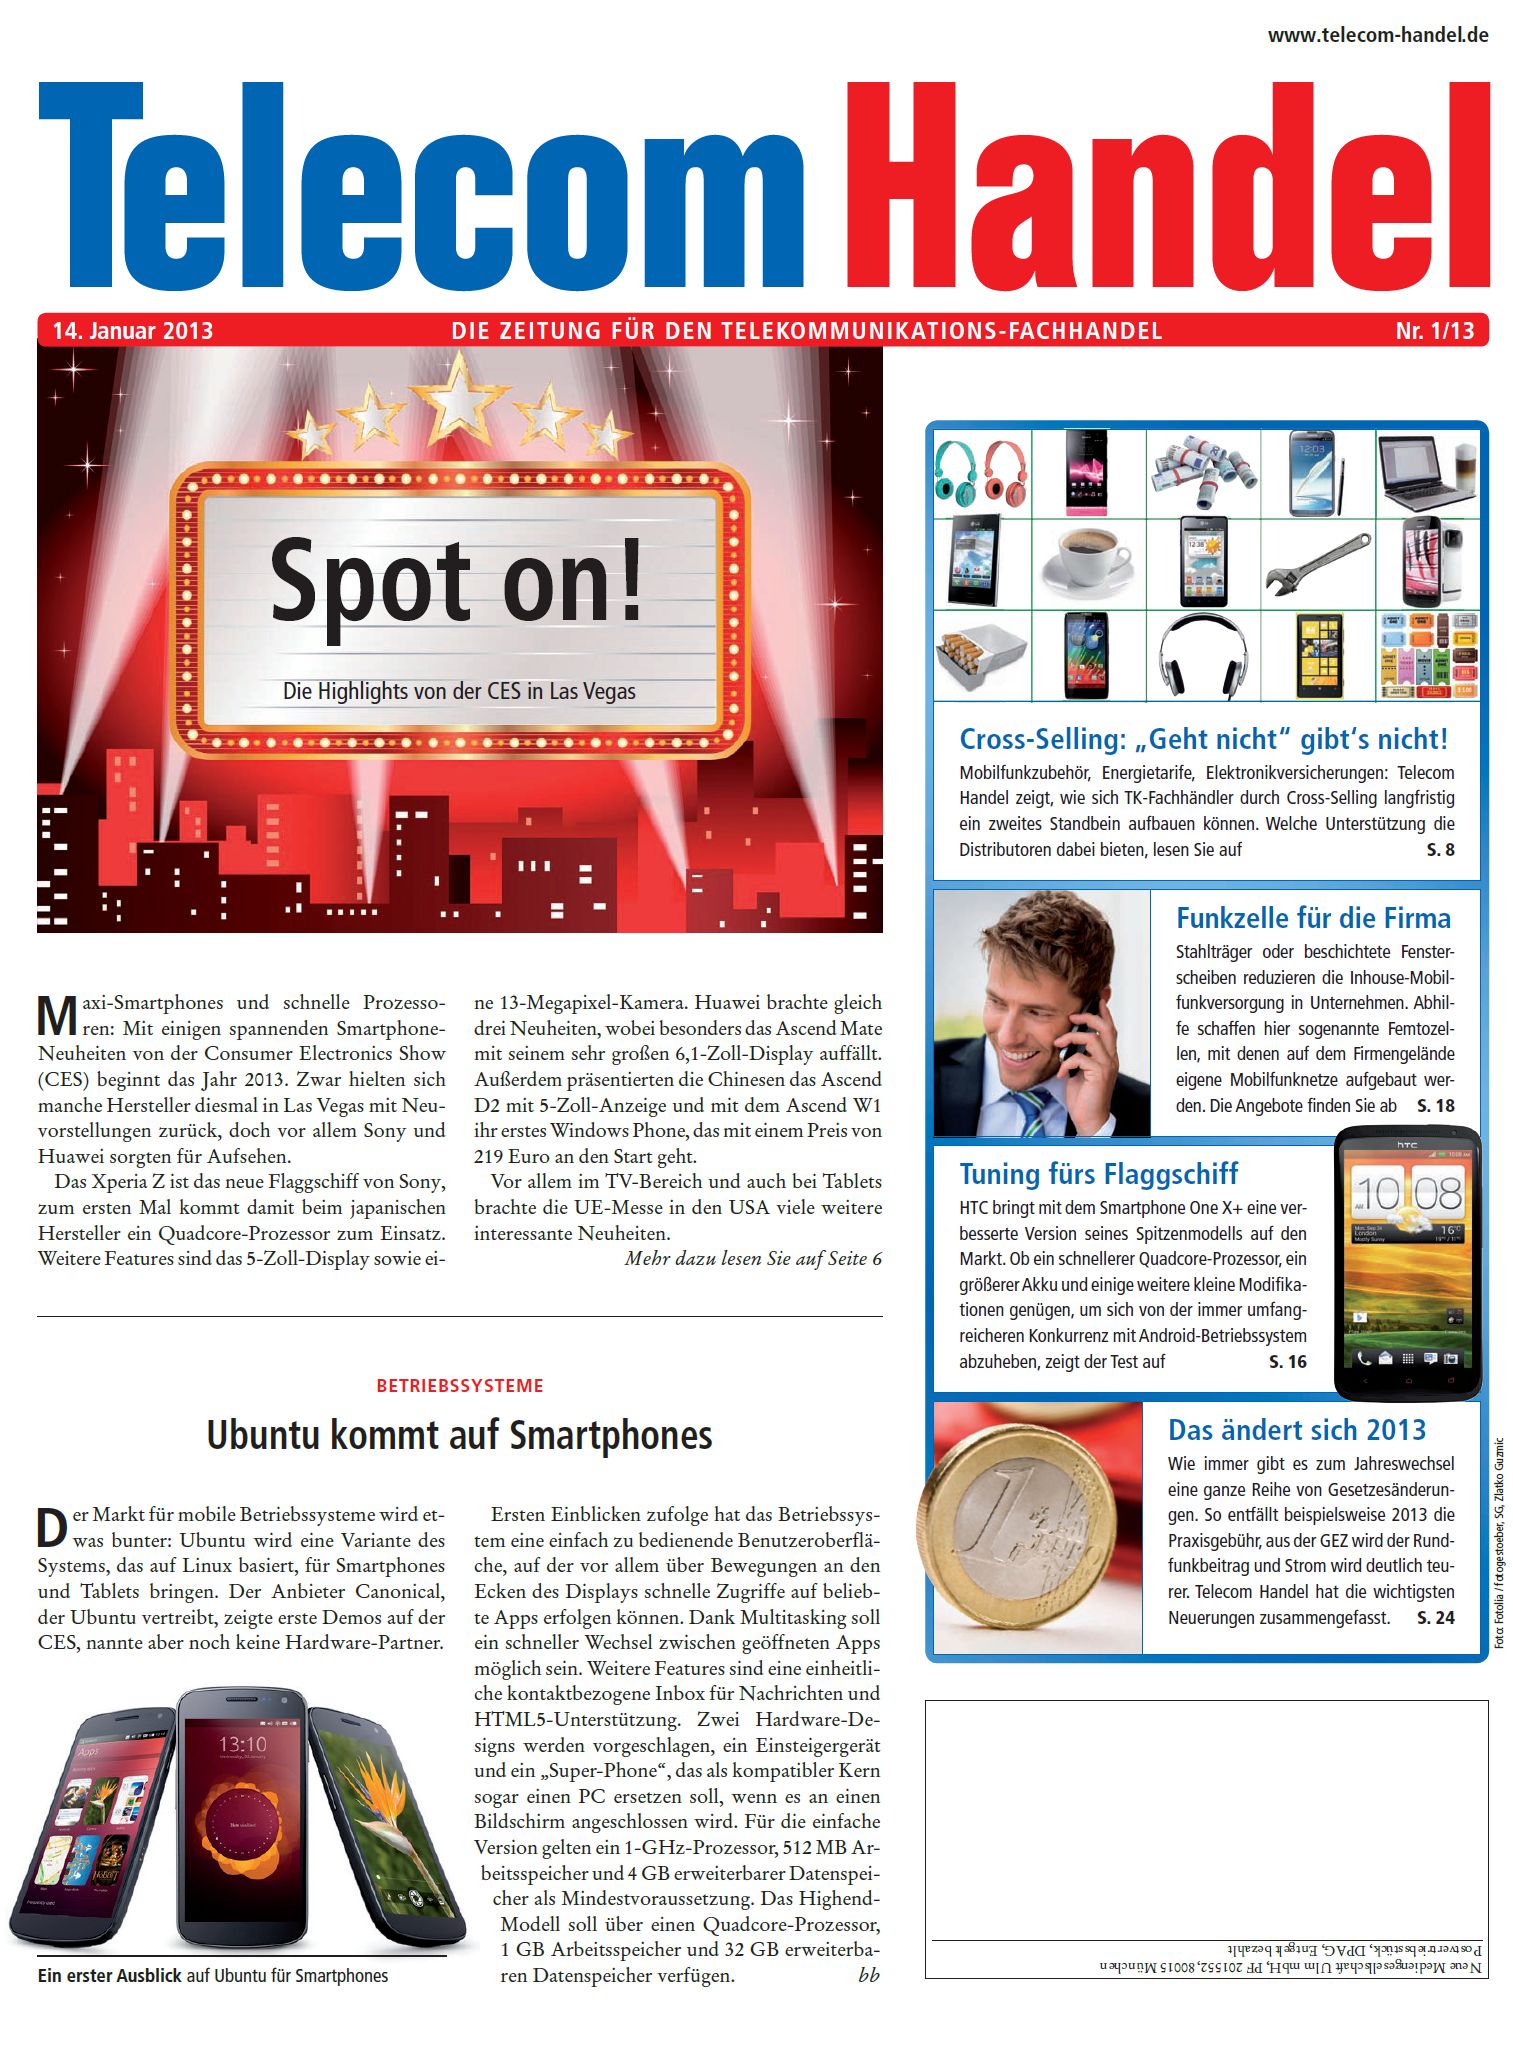 Telecom Handel Ausgabe 01/2013